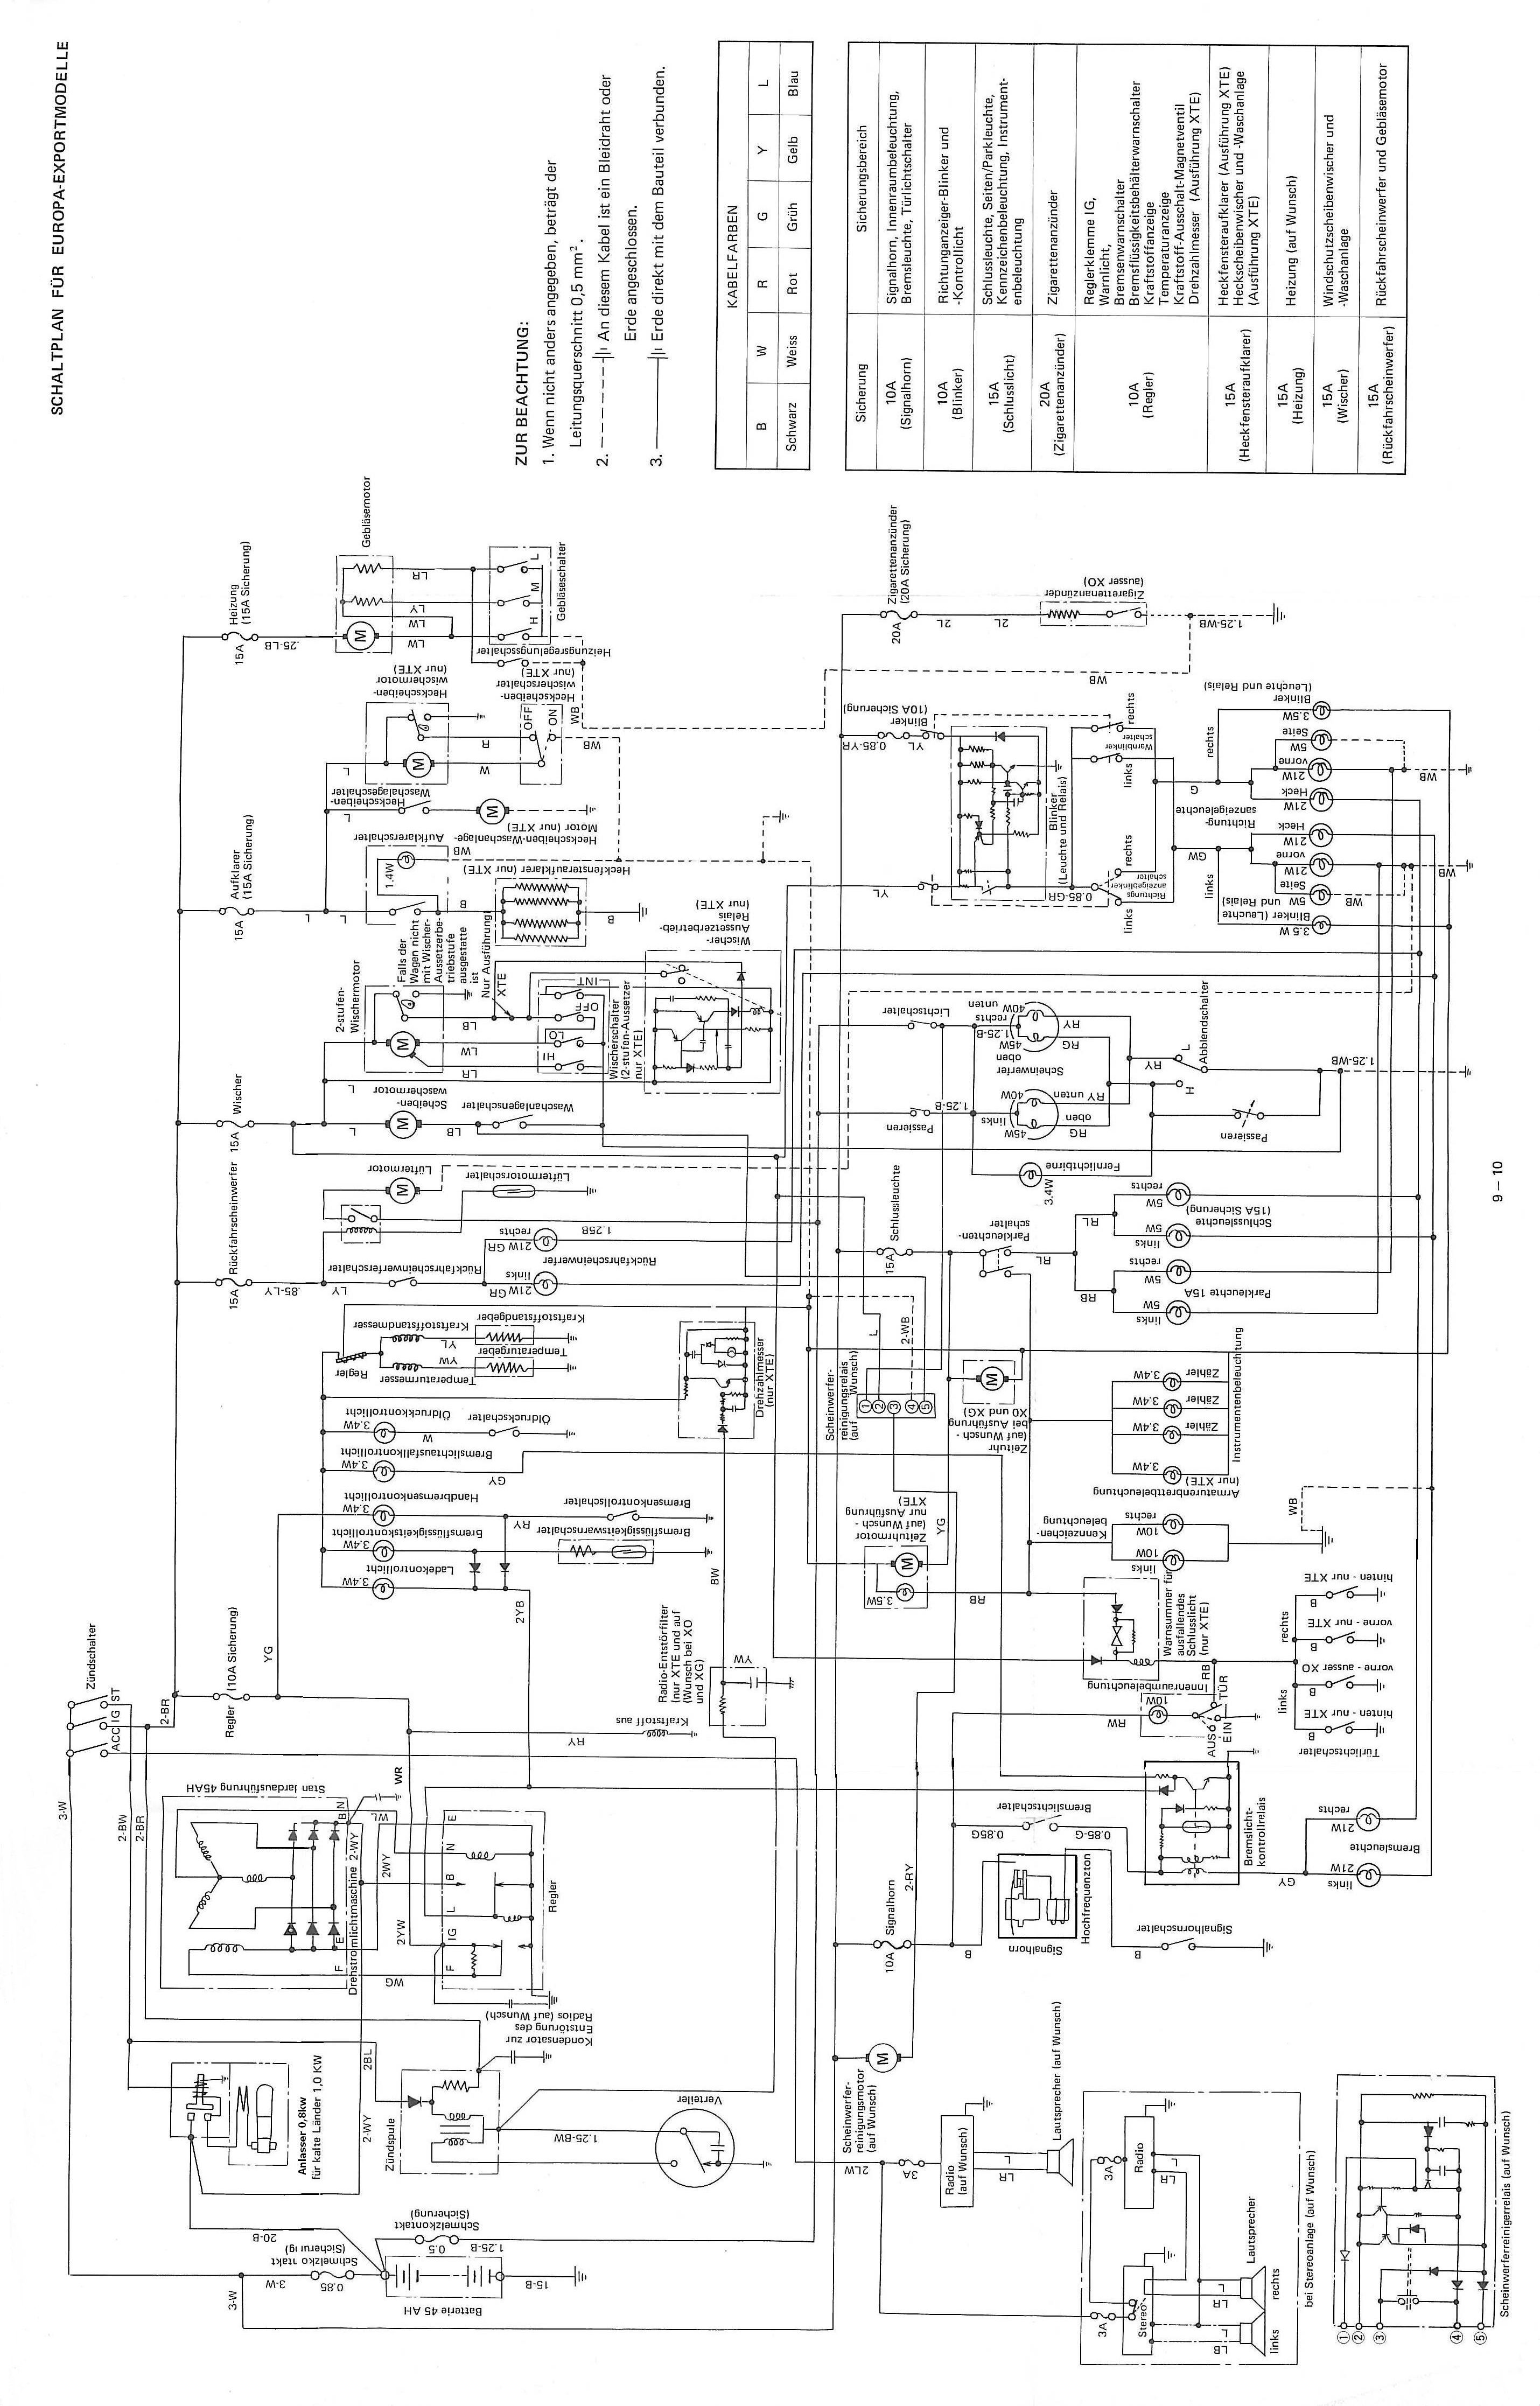 Hijet S80 Wiring Diagram 1991 Daihatsu Hijet Wiring Diagram Full Hd Version Wiring Of Hijet S80 Wiring Diagram